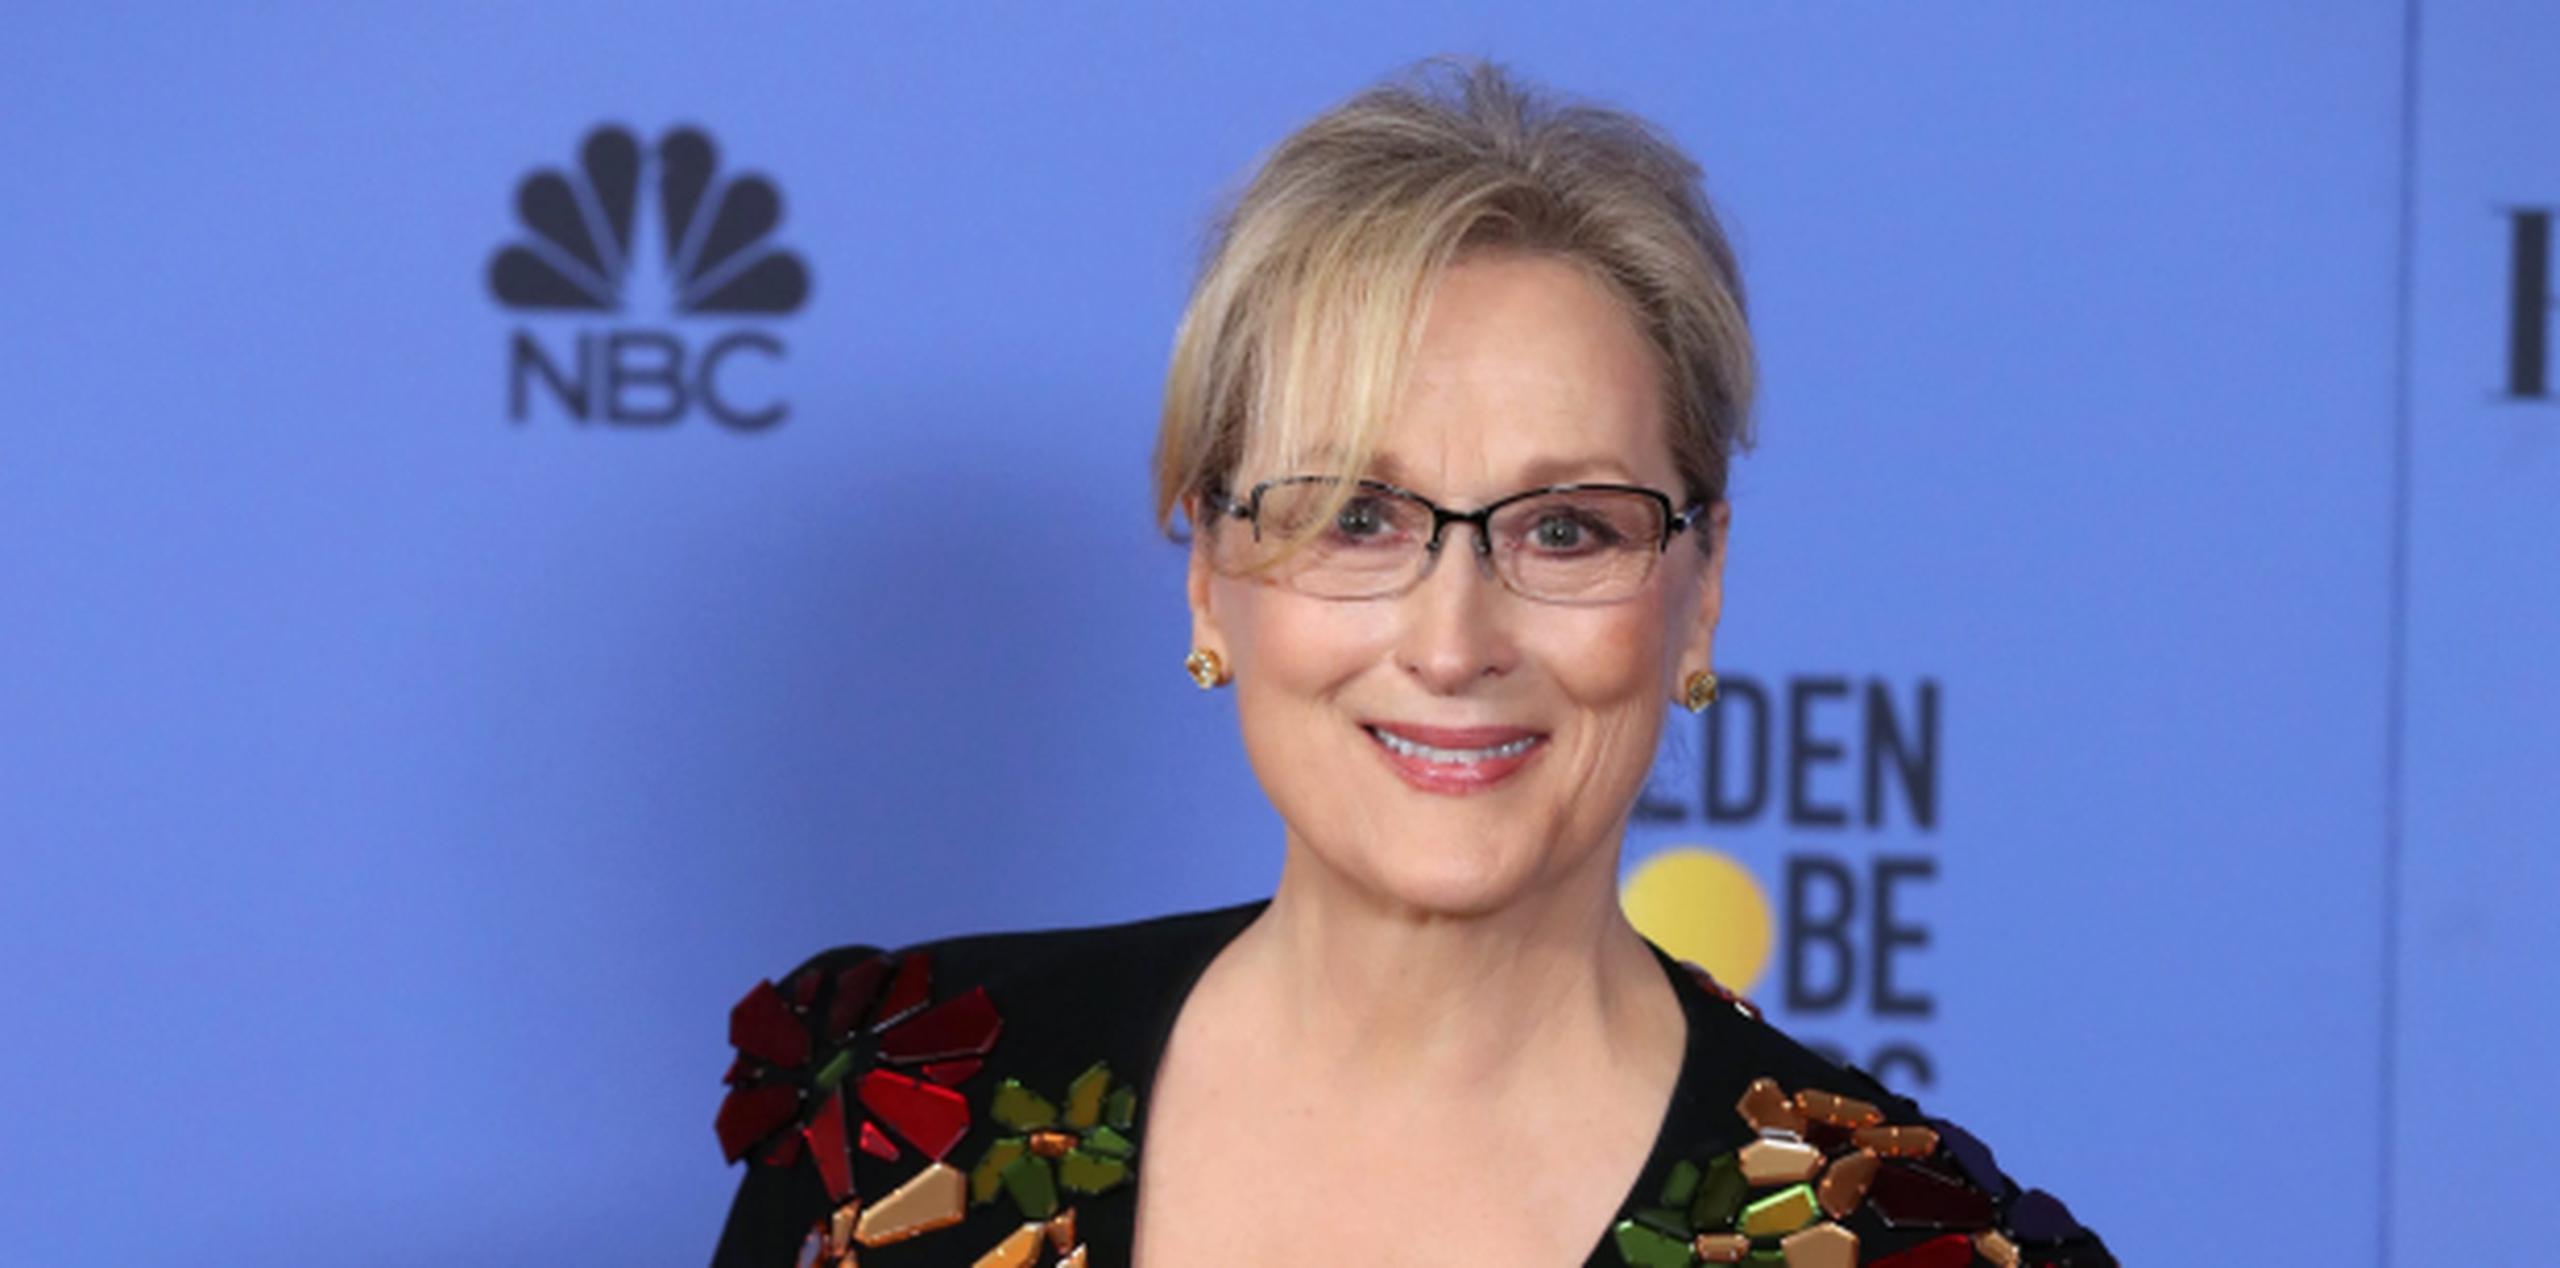 La versión del incidente se dio a conocer en 2016 en una biografía no autorizada de Meryl Streep. (Archivo)